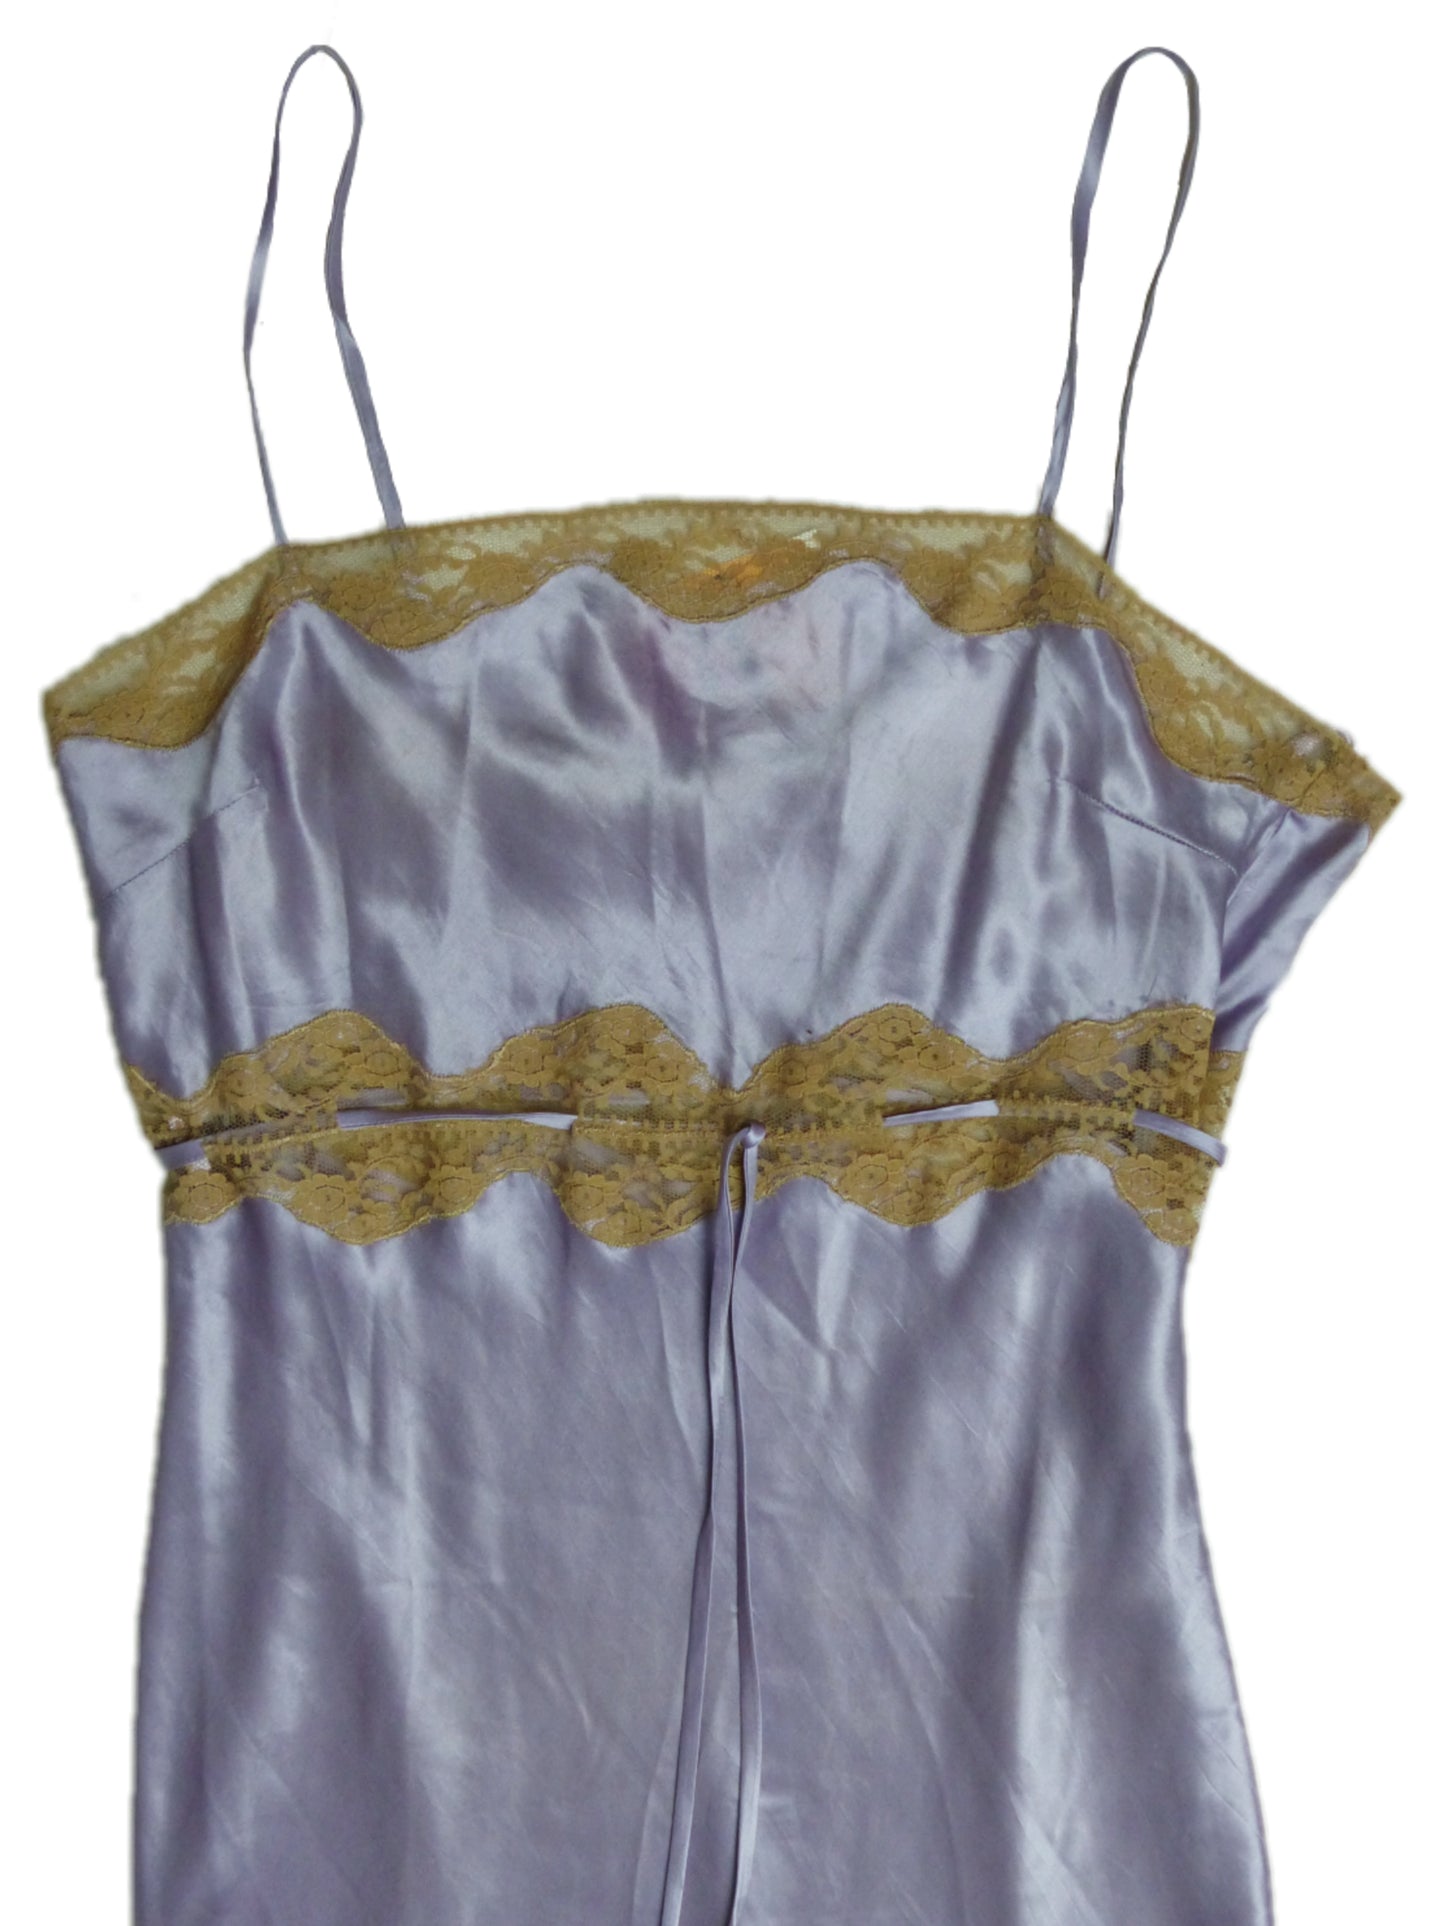 Nuisette / robe en soie de couleur lilas avec dentelle beige. Taille 36. A retrouver à la friperie Canaille Vintage à Bordeaux